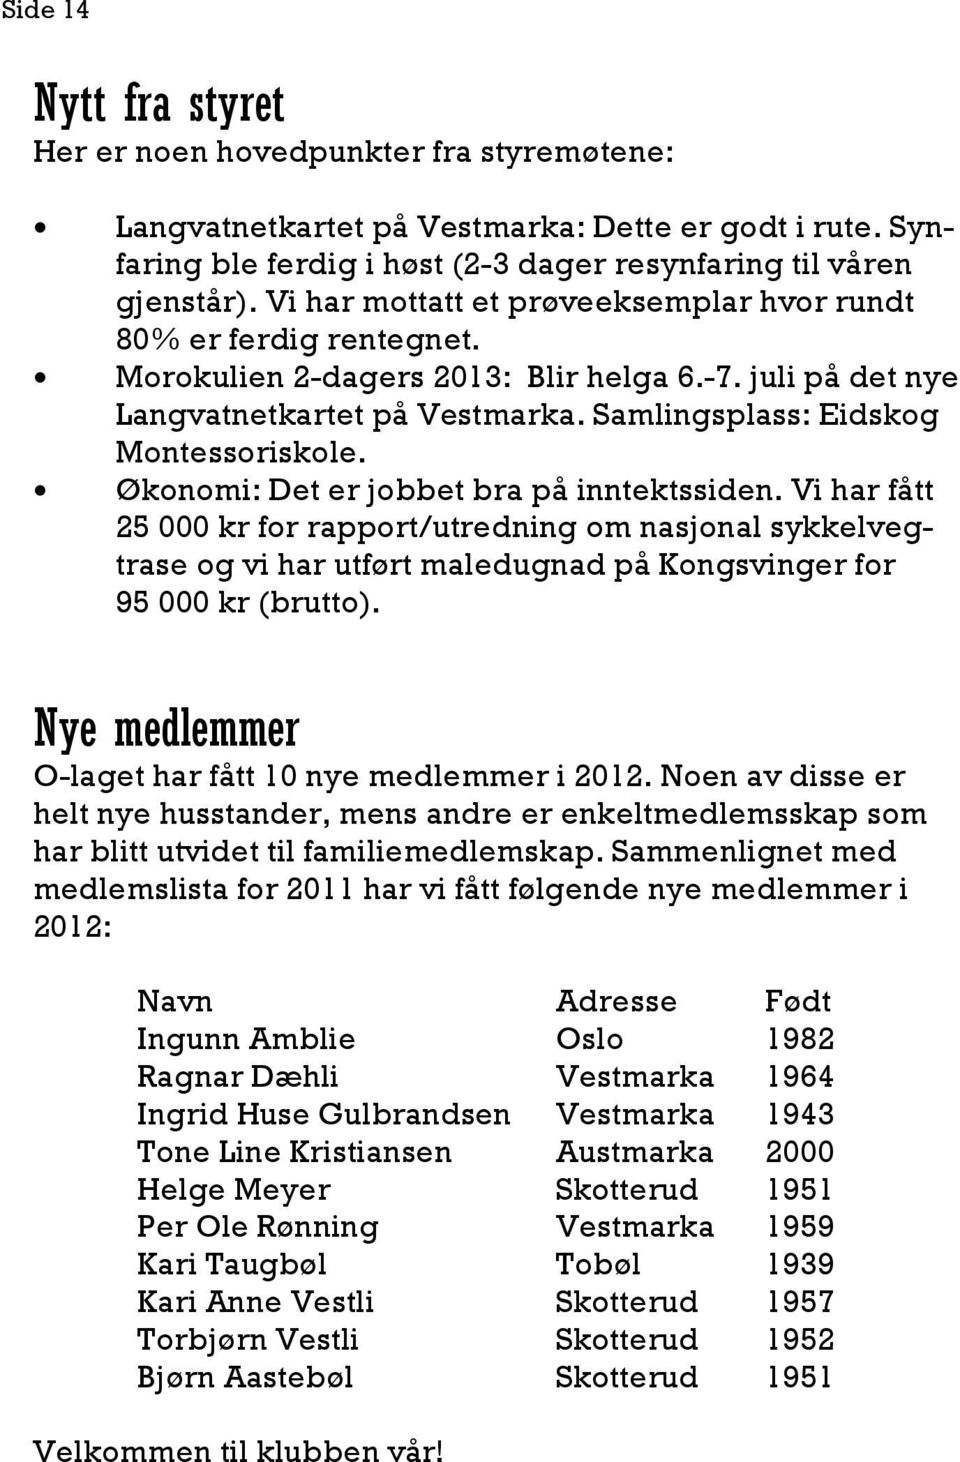 Økonomi: Det er jobbet bra på inntektssiden. Vi har fått 25 000 kr for rapport/utredning om nasjonal sykkelvegtrase og vi har utført maledugnad på Kongsvinger for 95 000 kr (brutto).